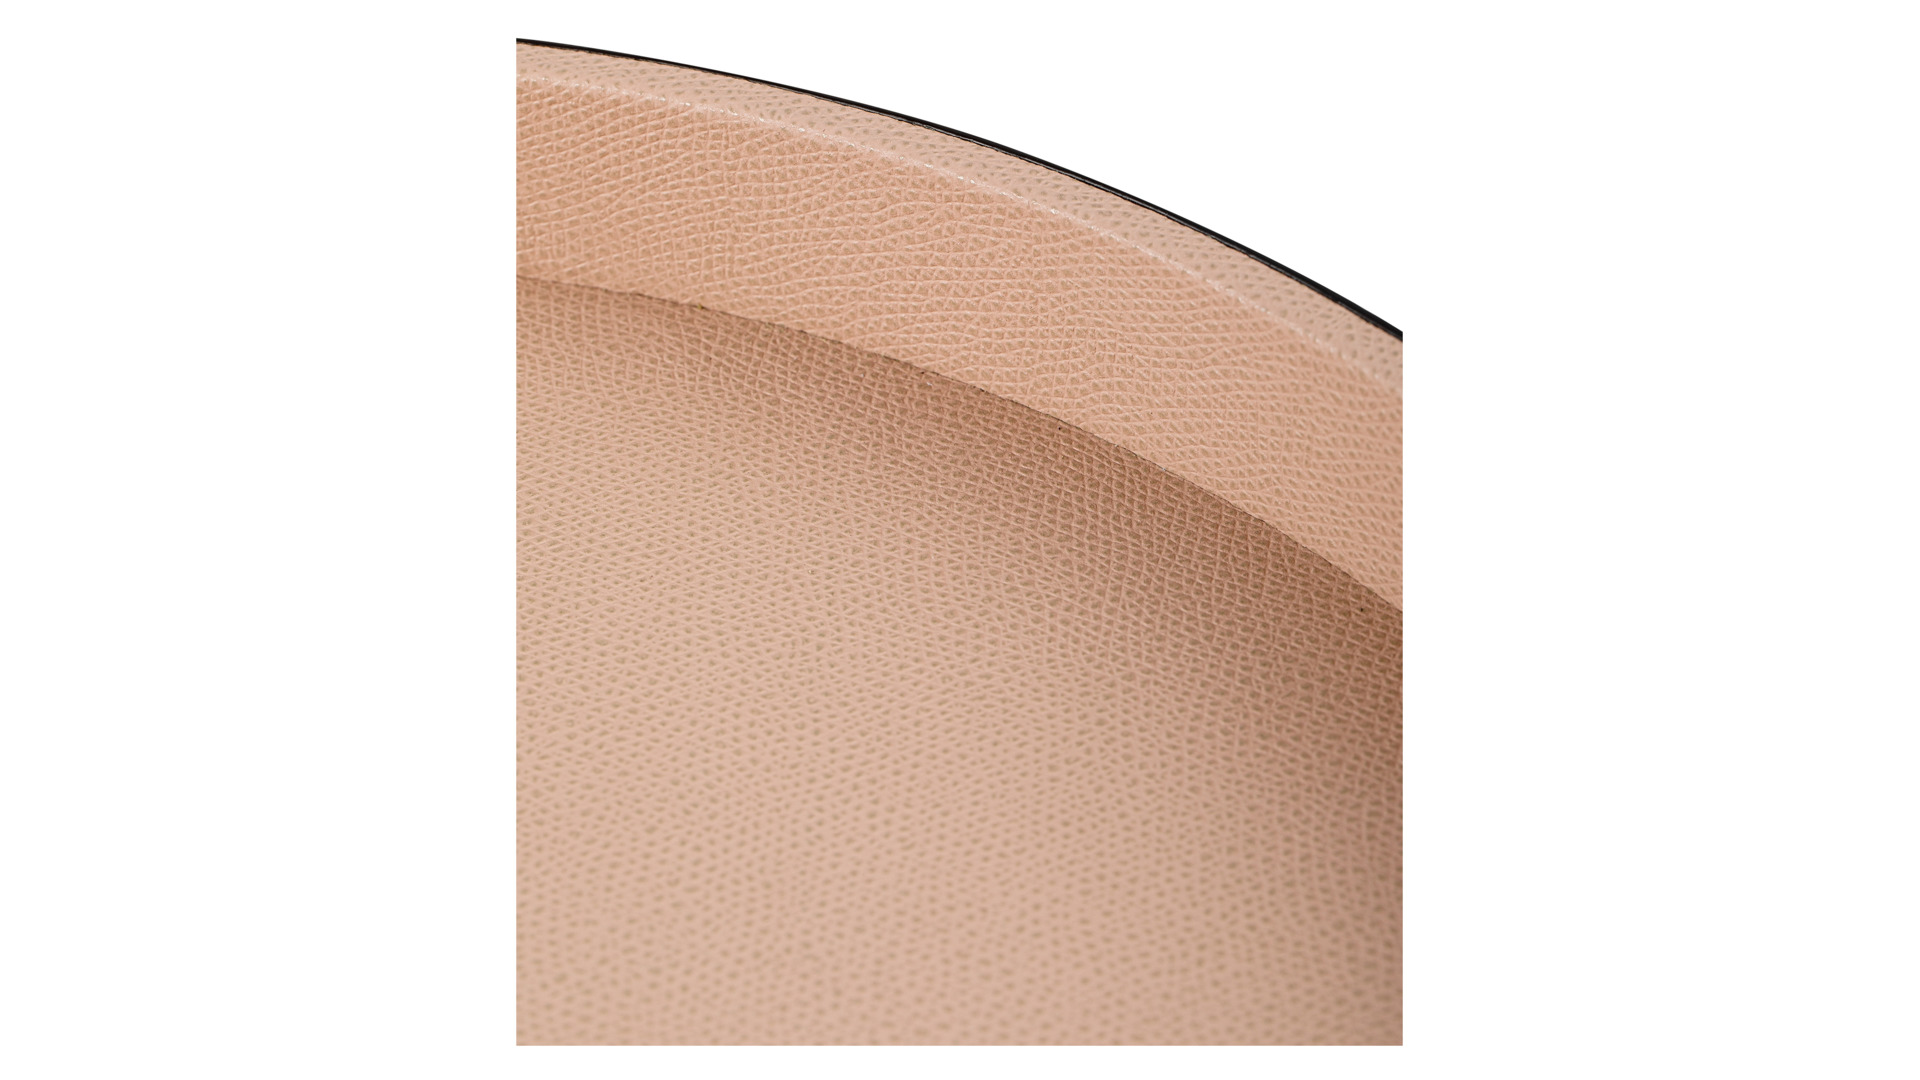 Поднос круглый GioBagnara Поло 37,5 см, светло-розовый